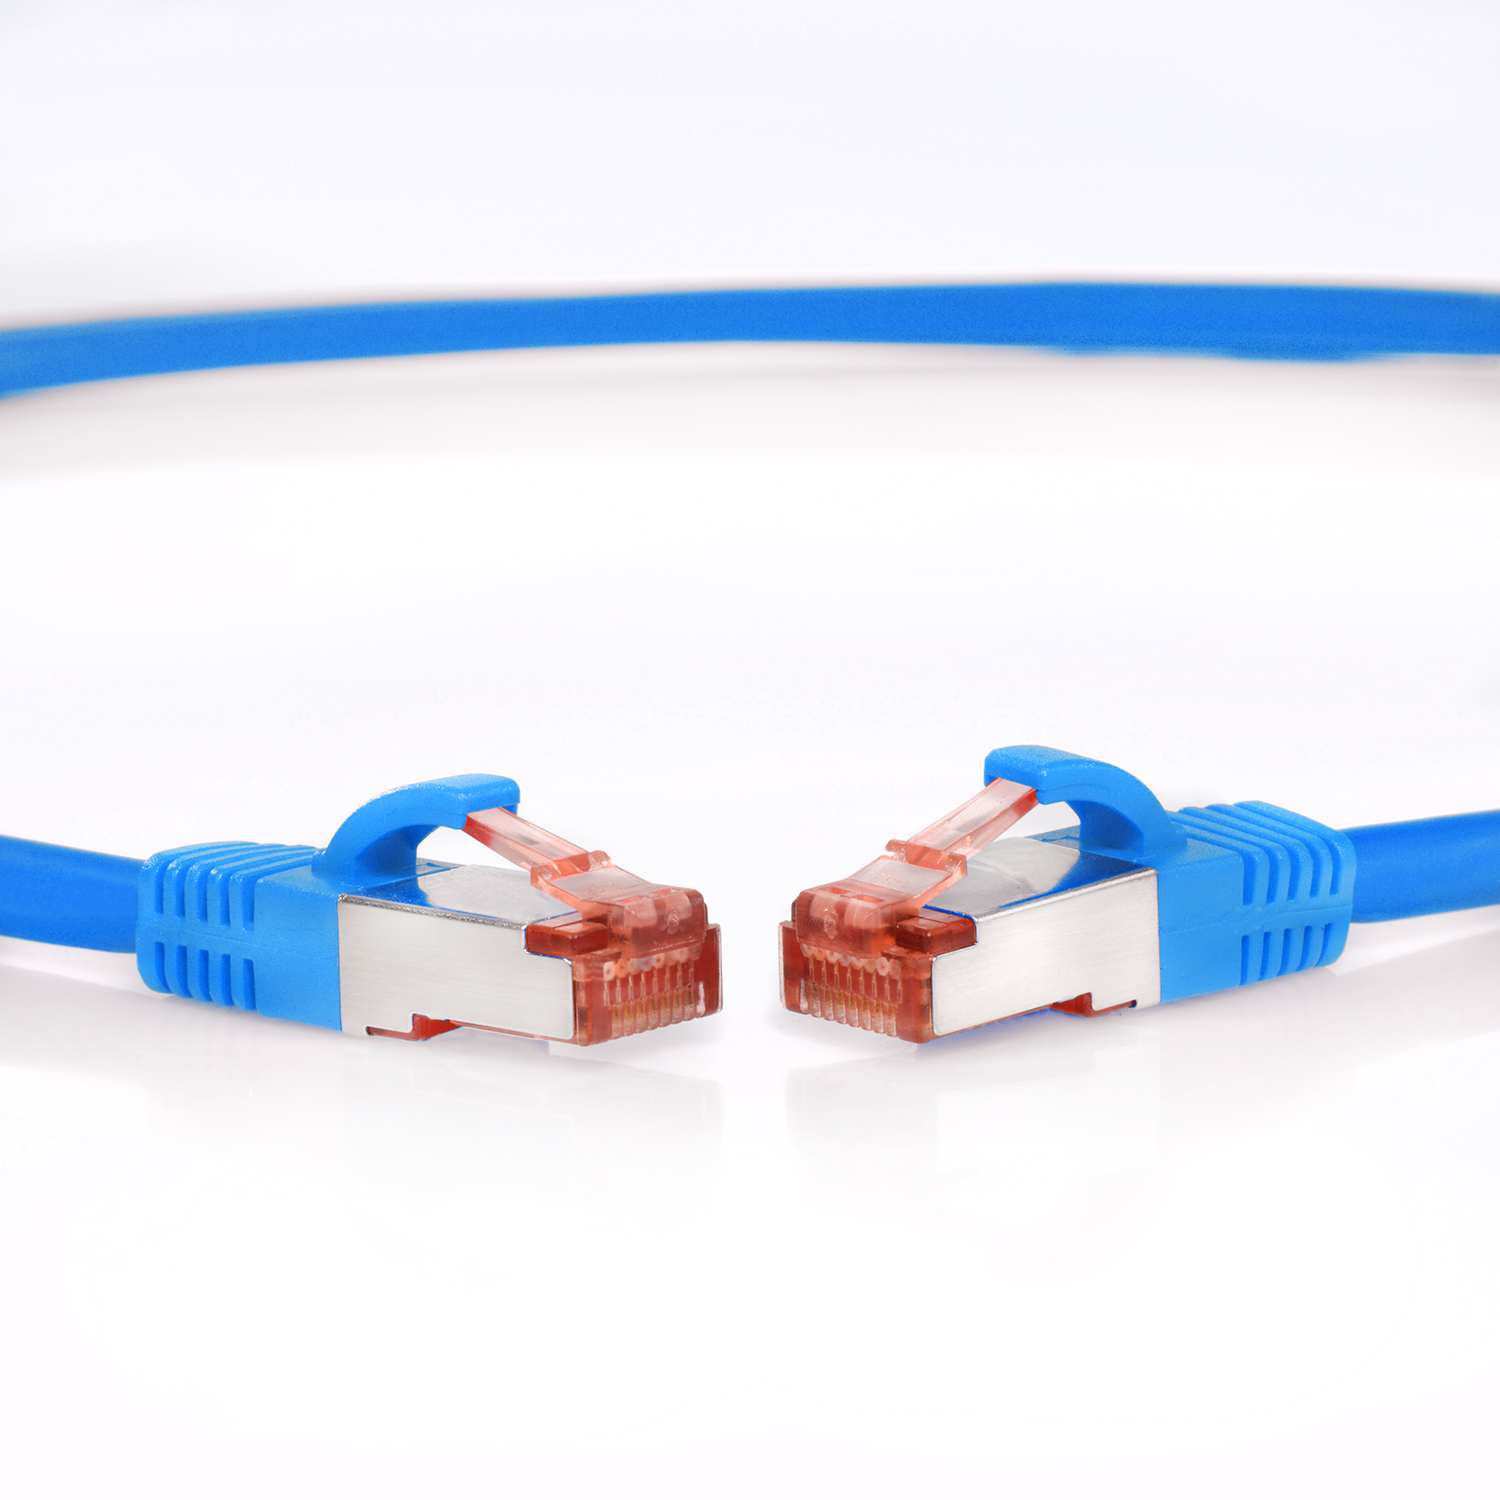 TPFNET 5er / m 2 Netzwerkkabel, blau, 1000Mbit, S/FTP Patchkabel 2m Netzwerkkabel Pack